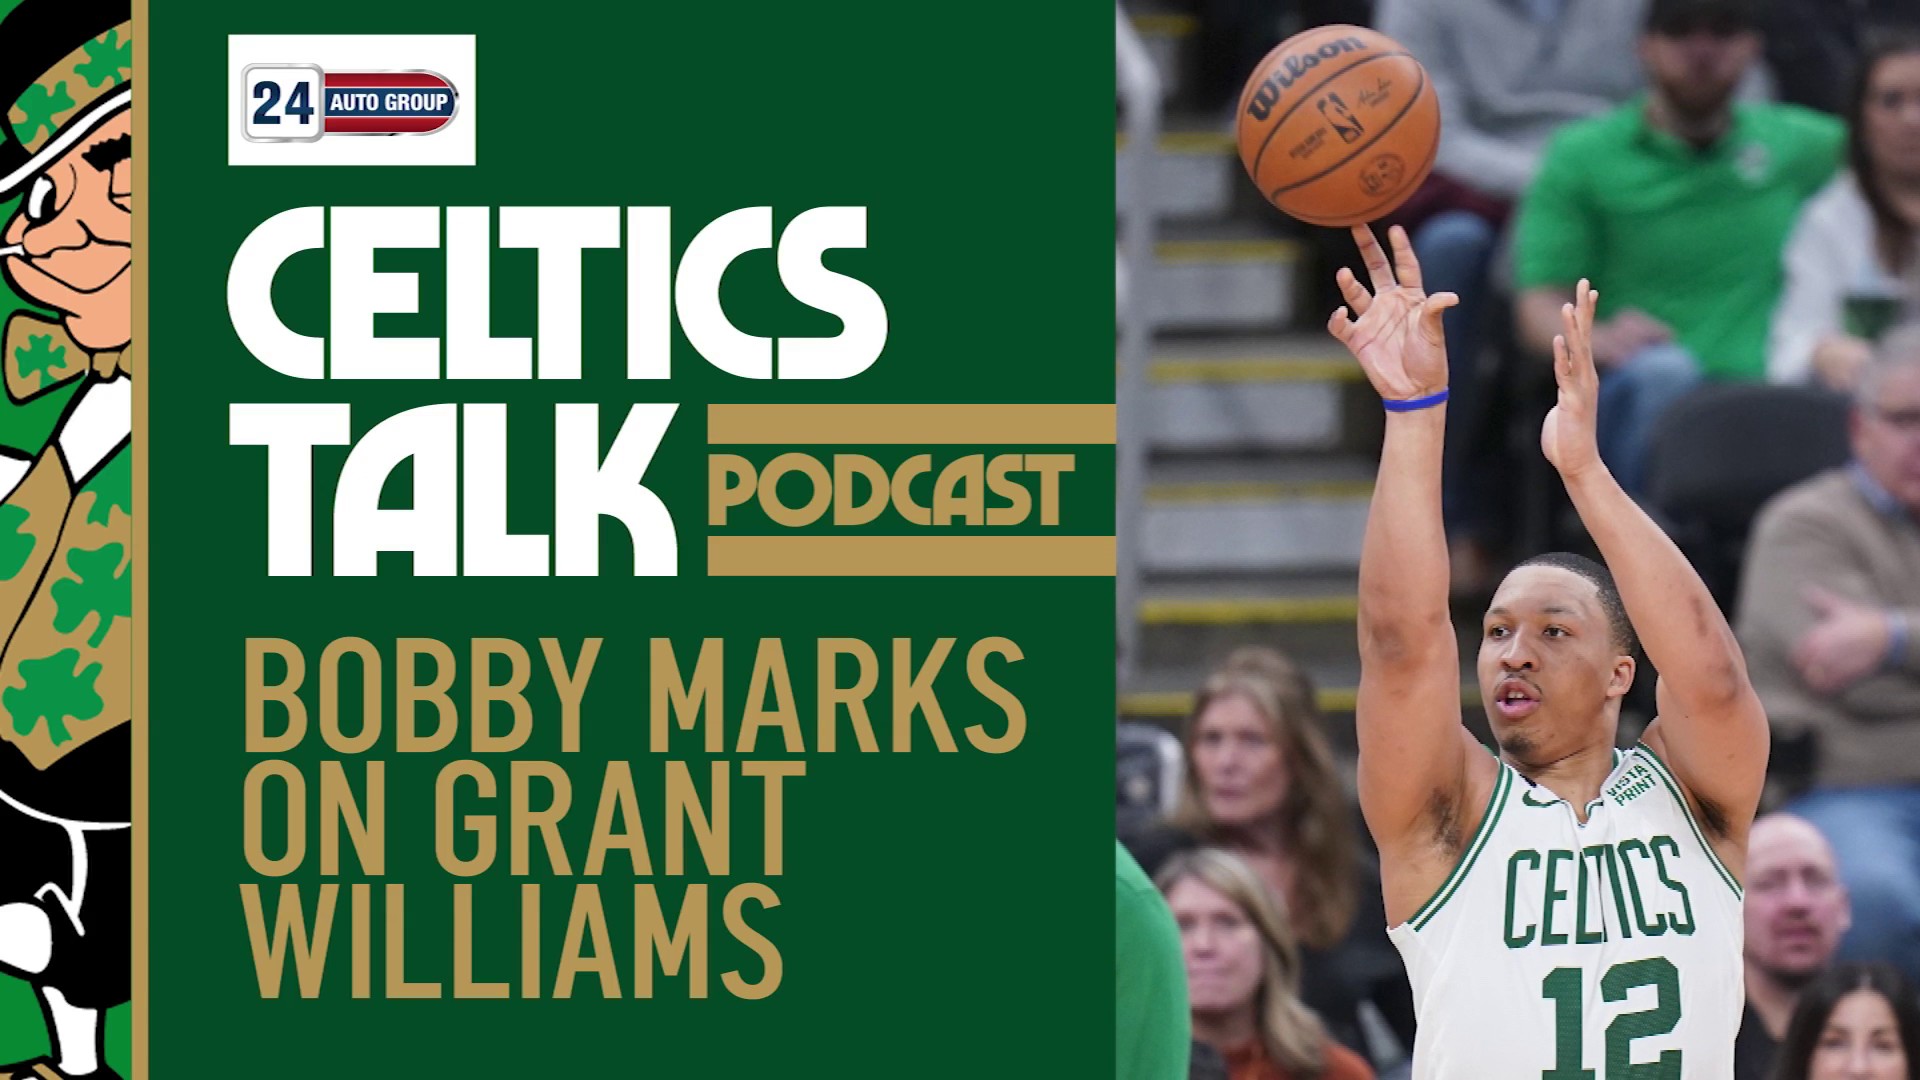 Celtics on NBC Sports Boston on X: Grant Williams had his career